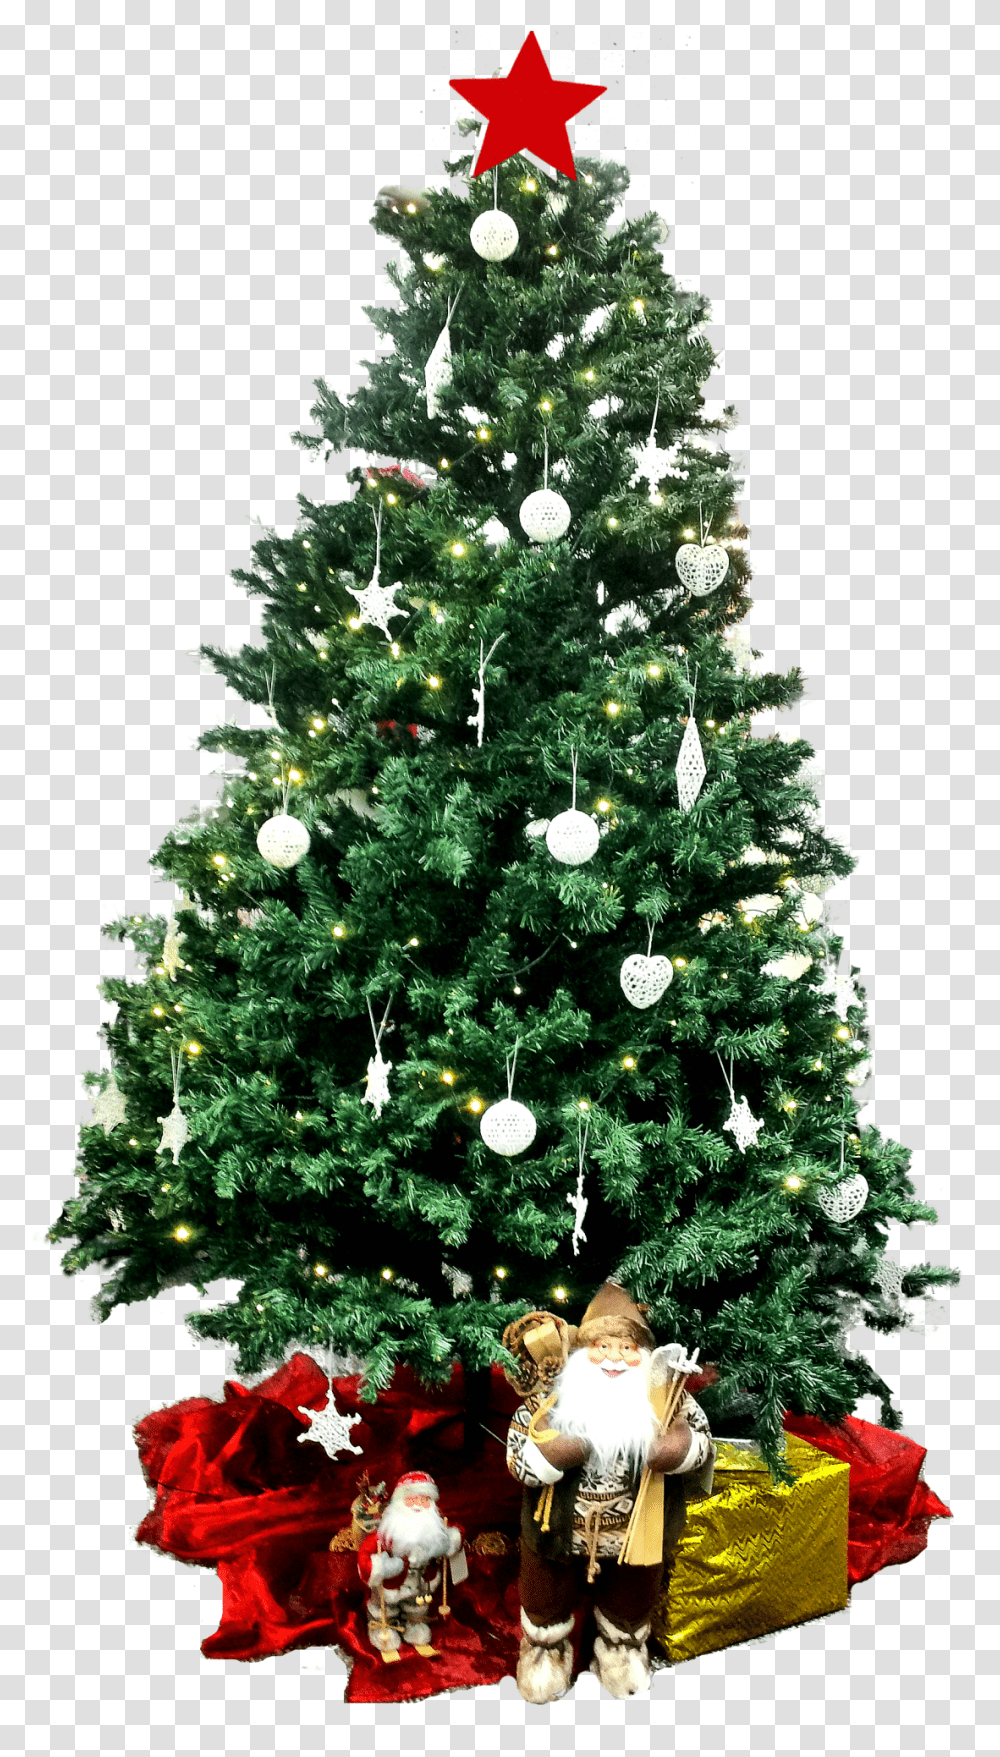 Images Clipart Photos Gratuites Libres De Droits Creative Christmas Eve Greeting, Christmas Tree, Ornament, Plant, Person Transparent Png